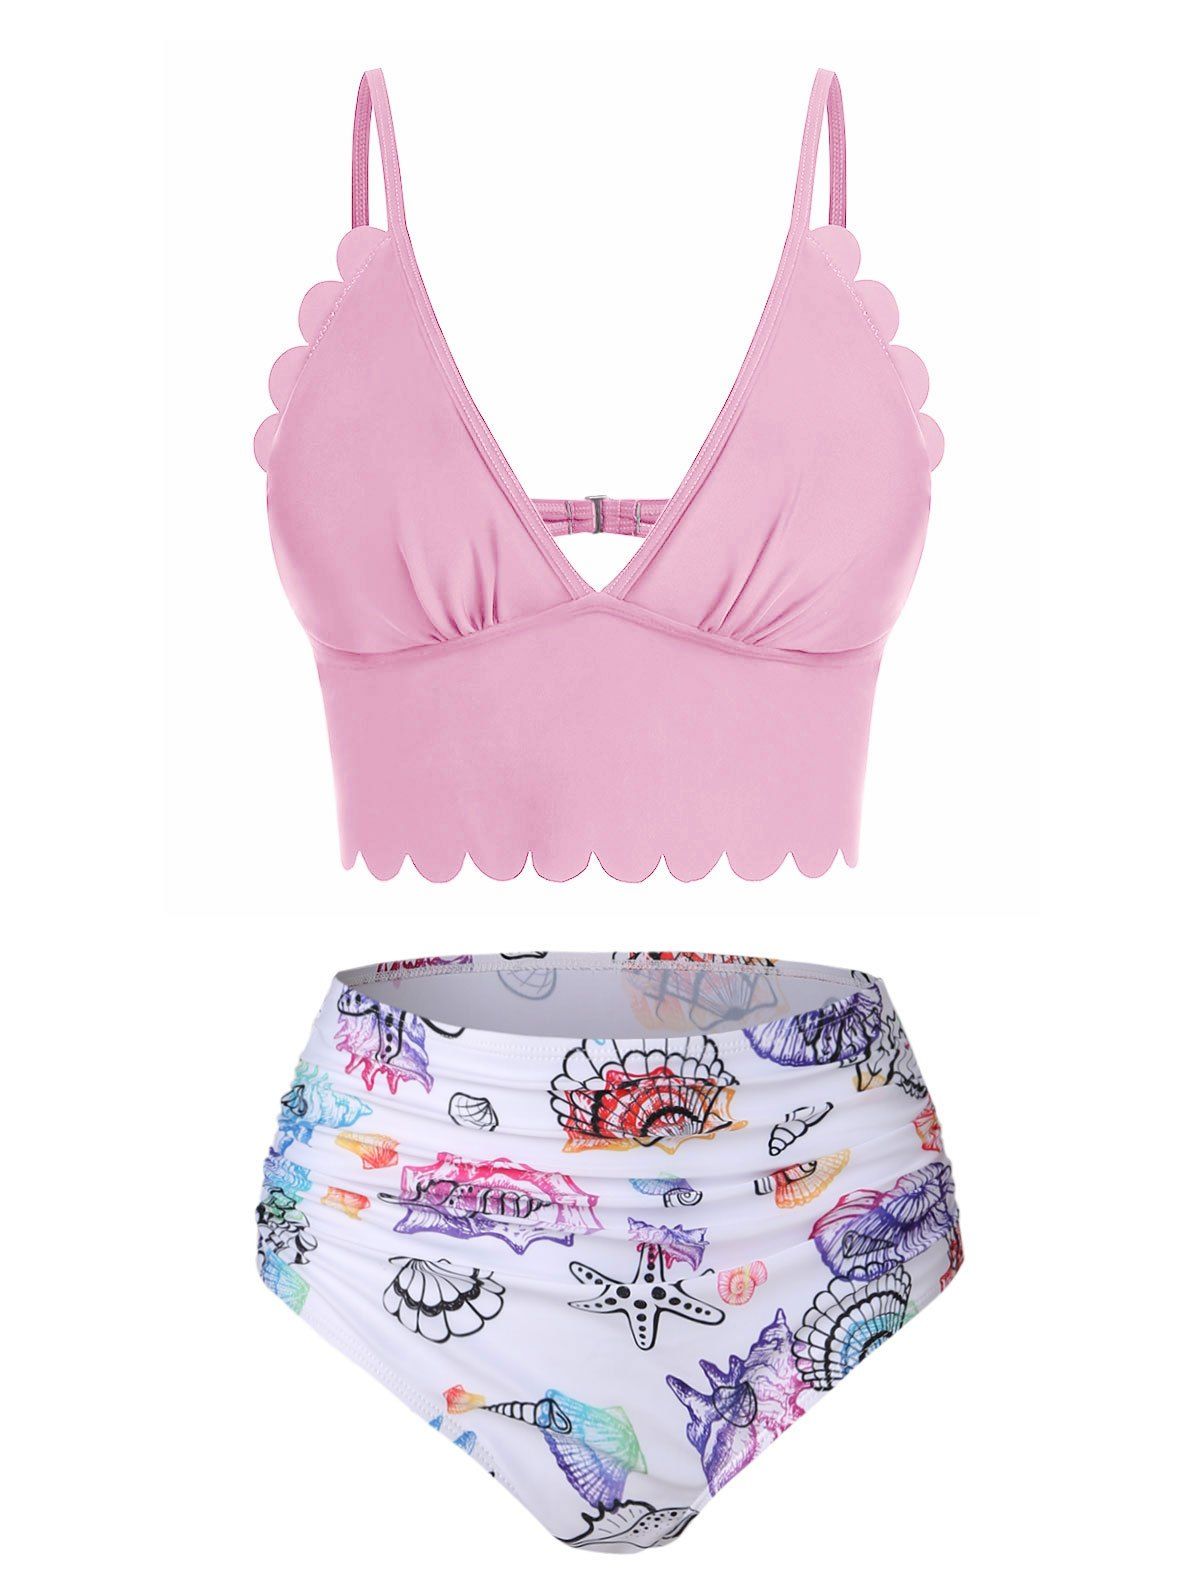 Shell Starfish Print Ruched Padded Bikini Set - LIGHT PINK M